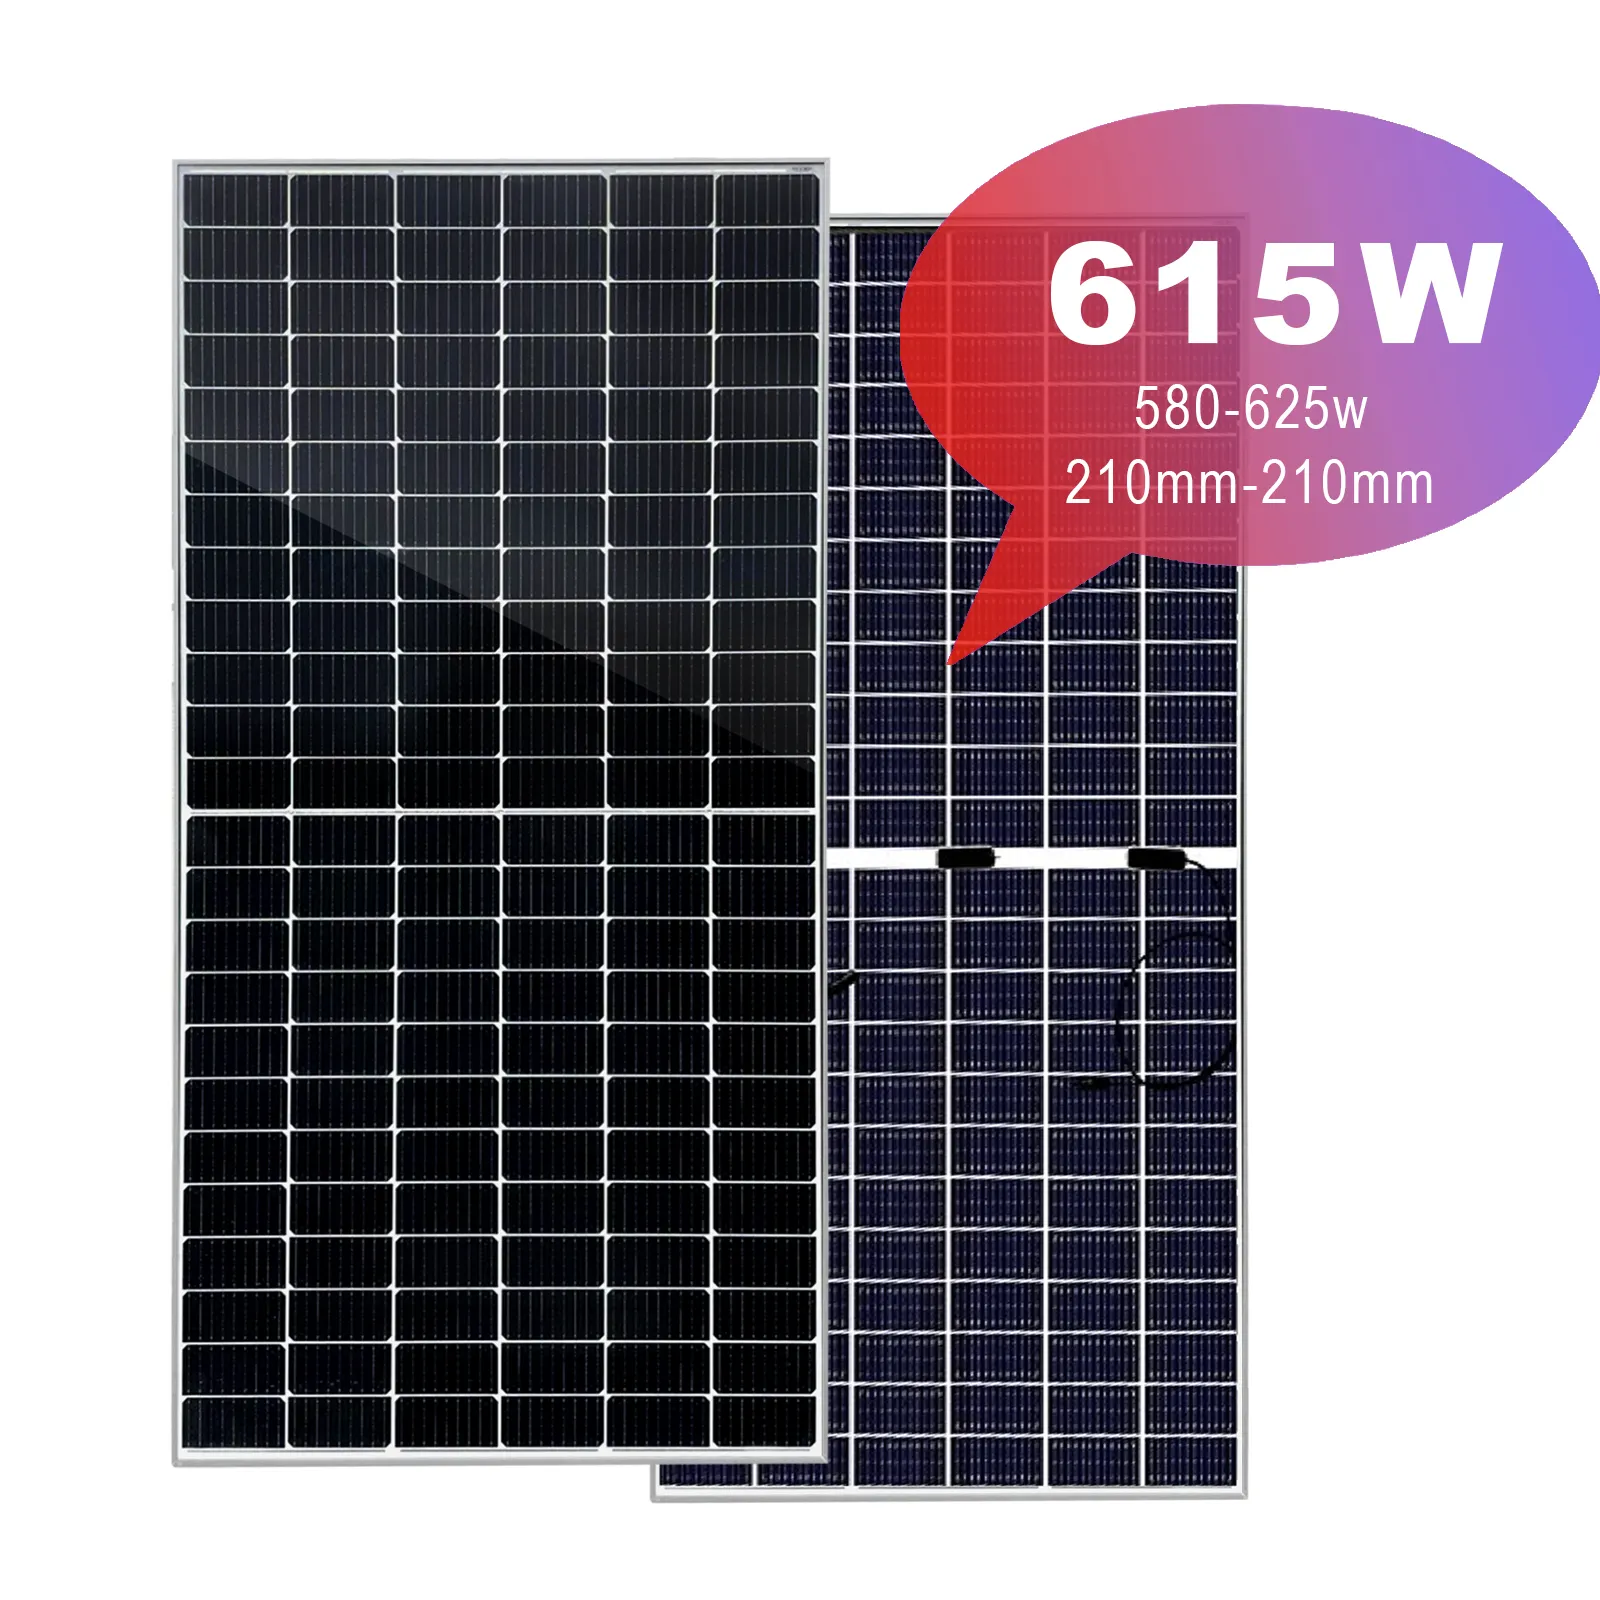 Grandi dimensioni Mono moduli solari 615w 630W bifacciale doppio vetro pannelli solari per centrali elettriche